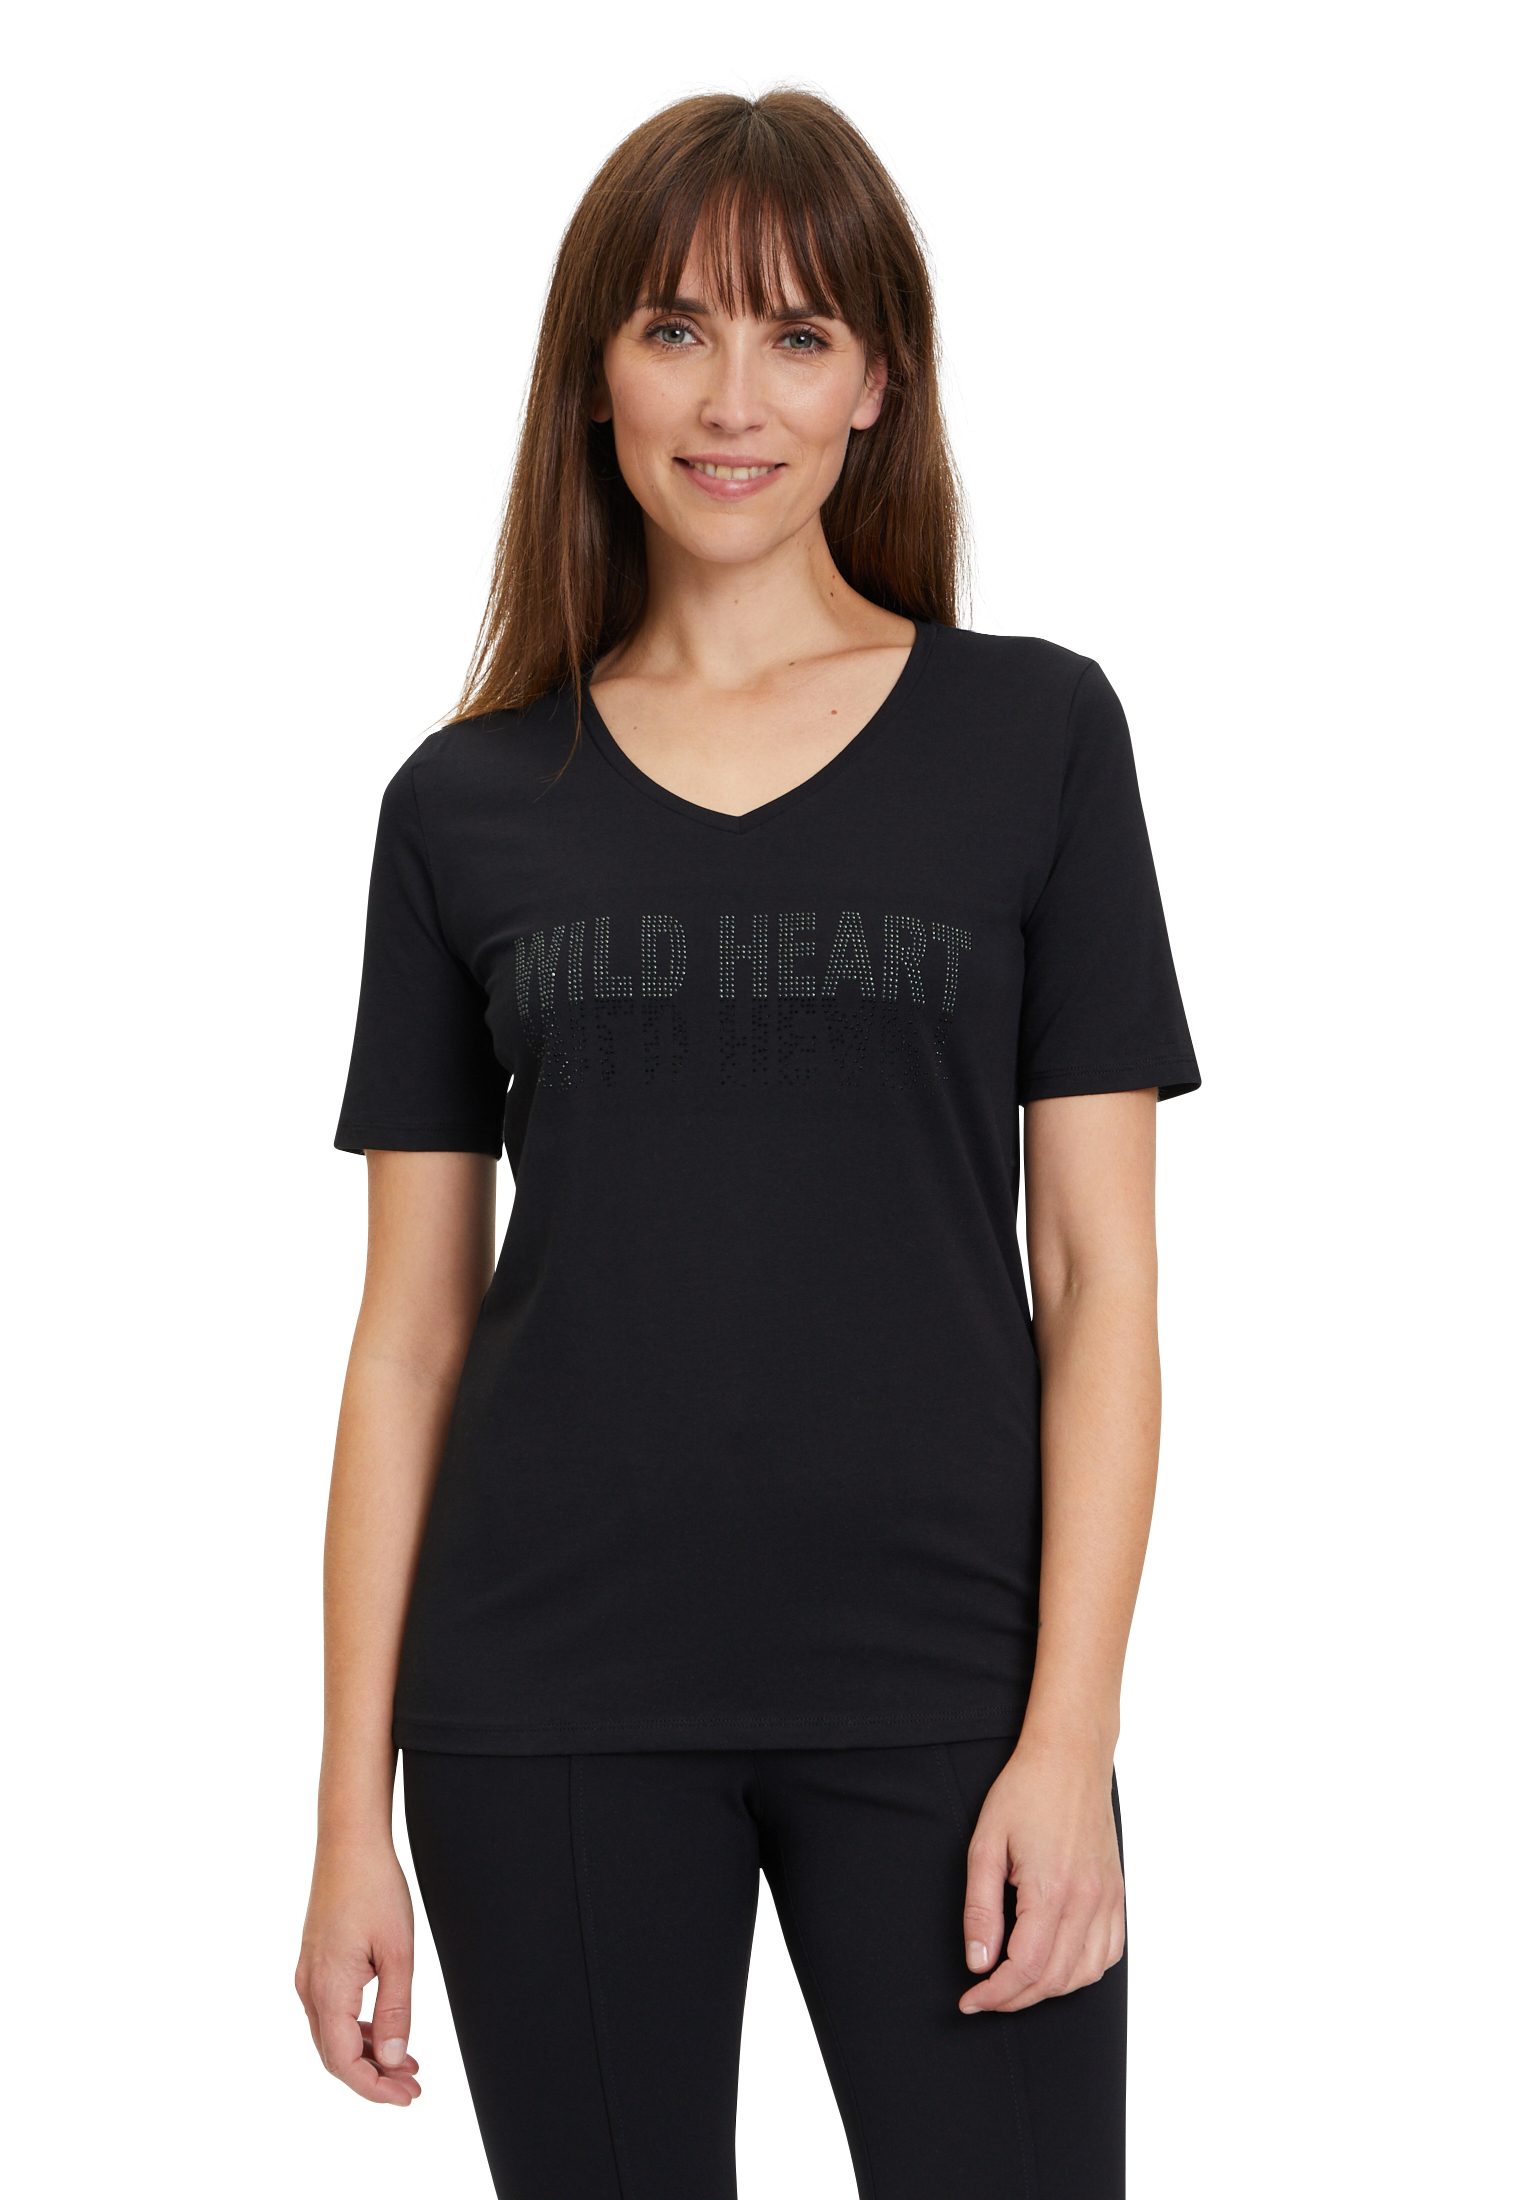 T-shirt czarny Betty Barclay 2446-1018-9045